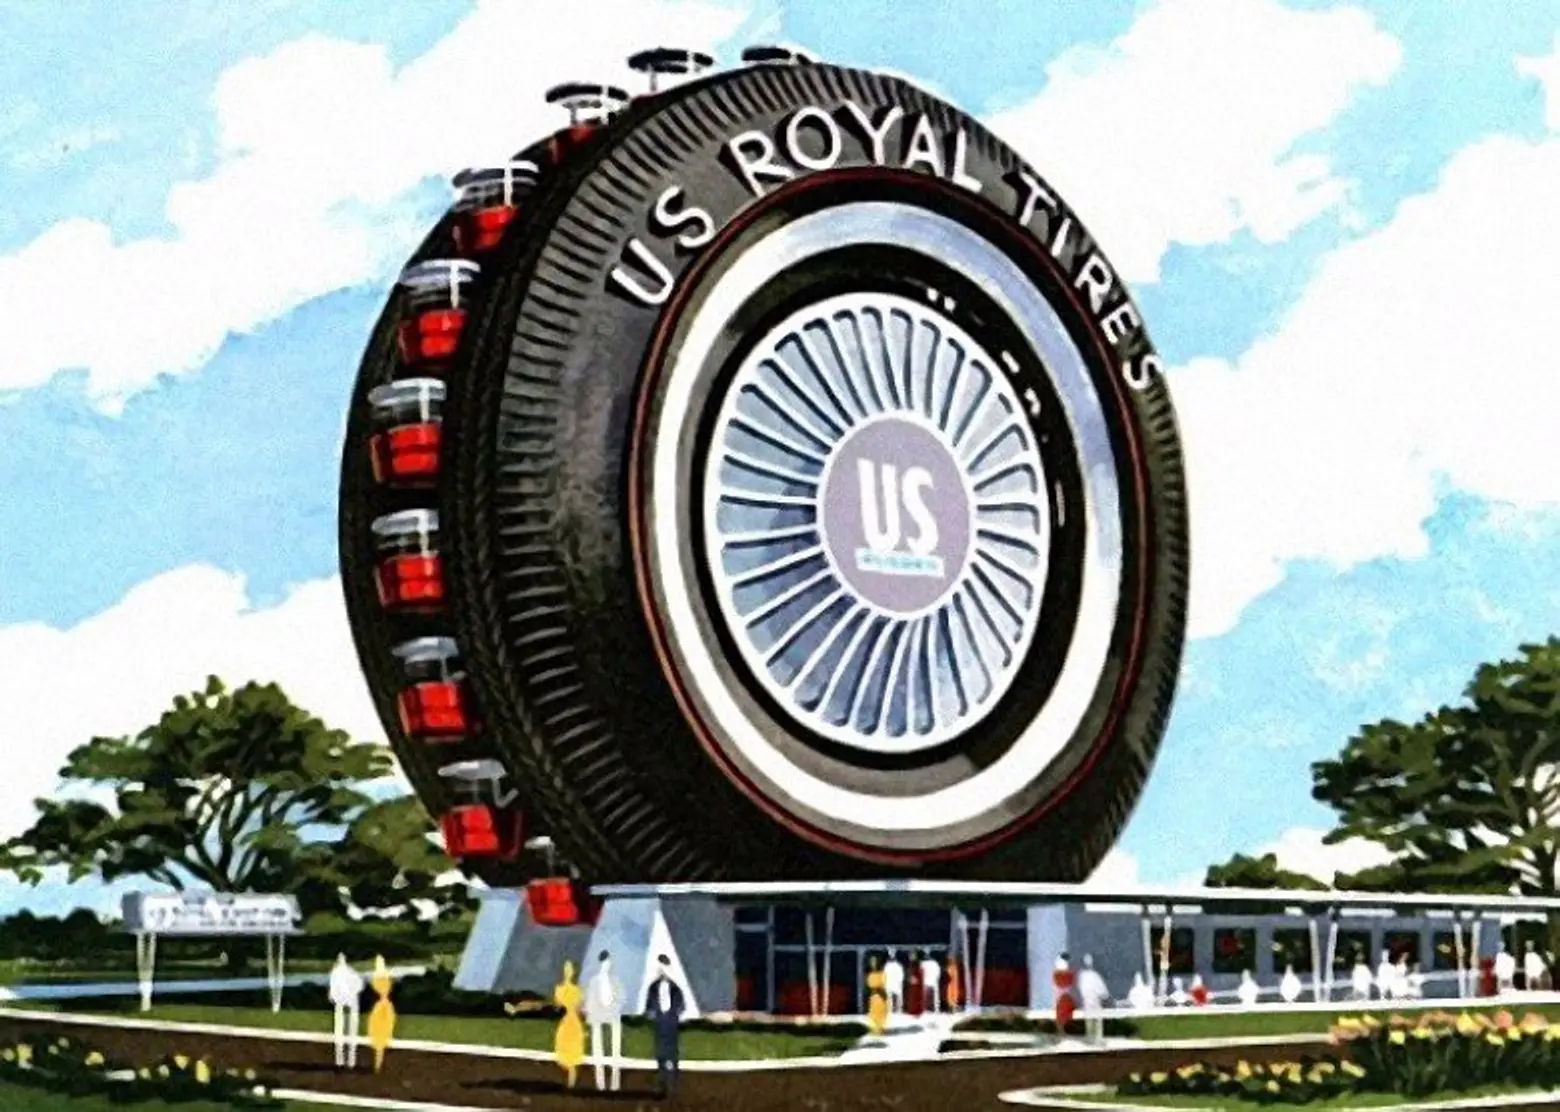 uniroyal giant tire, 1964 world's fair, ny world's fair